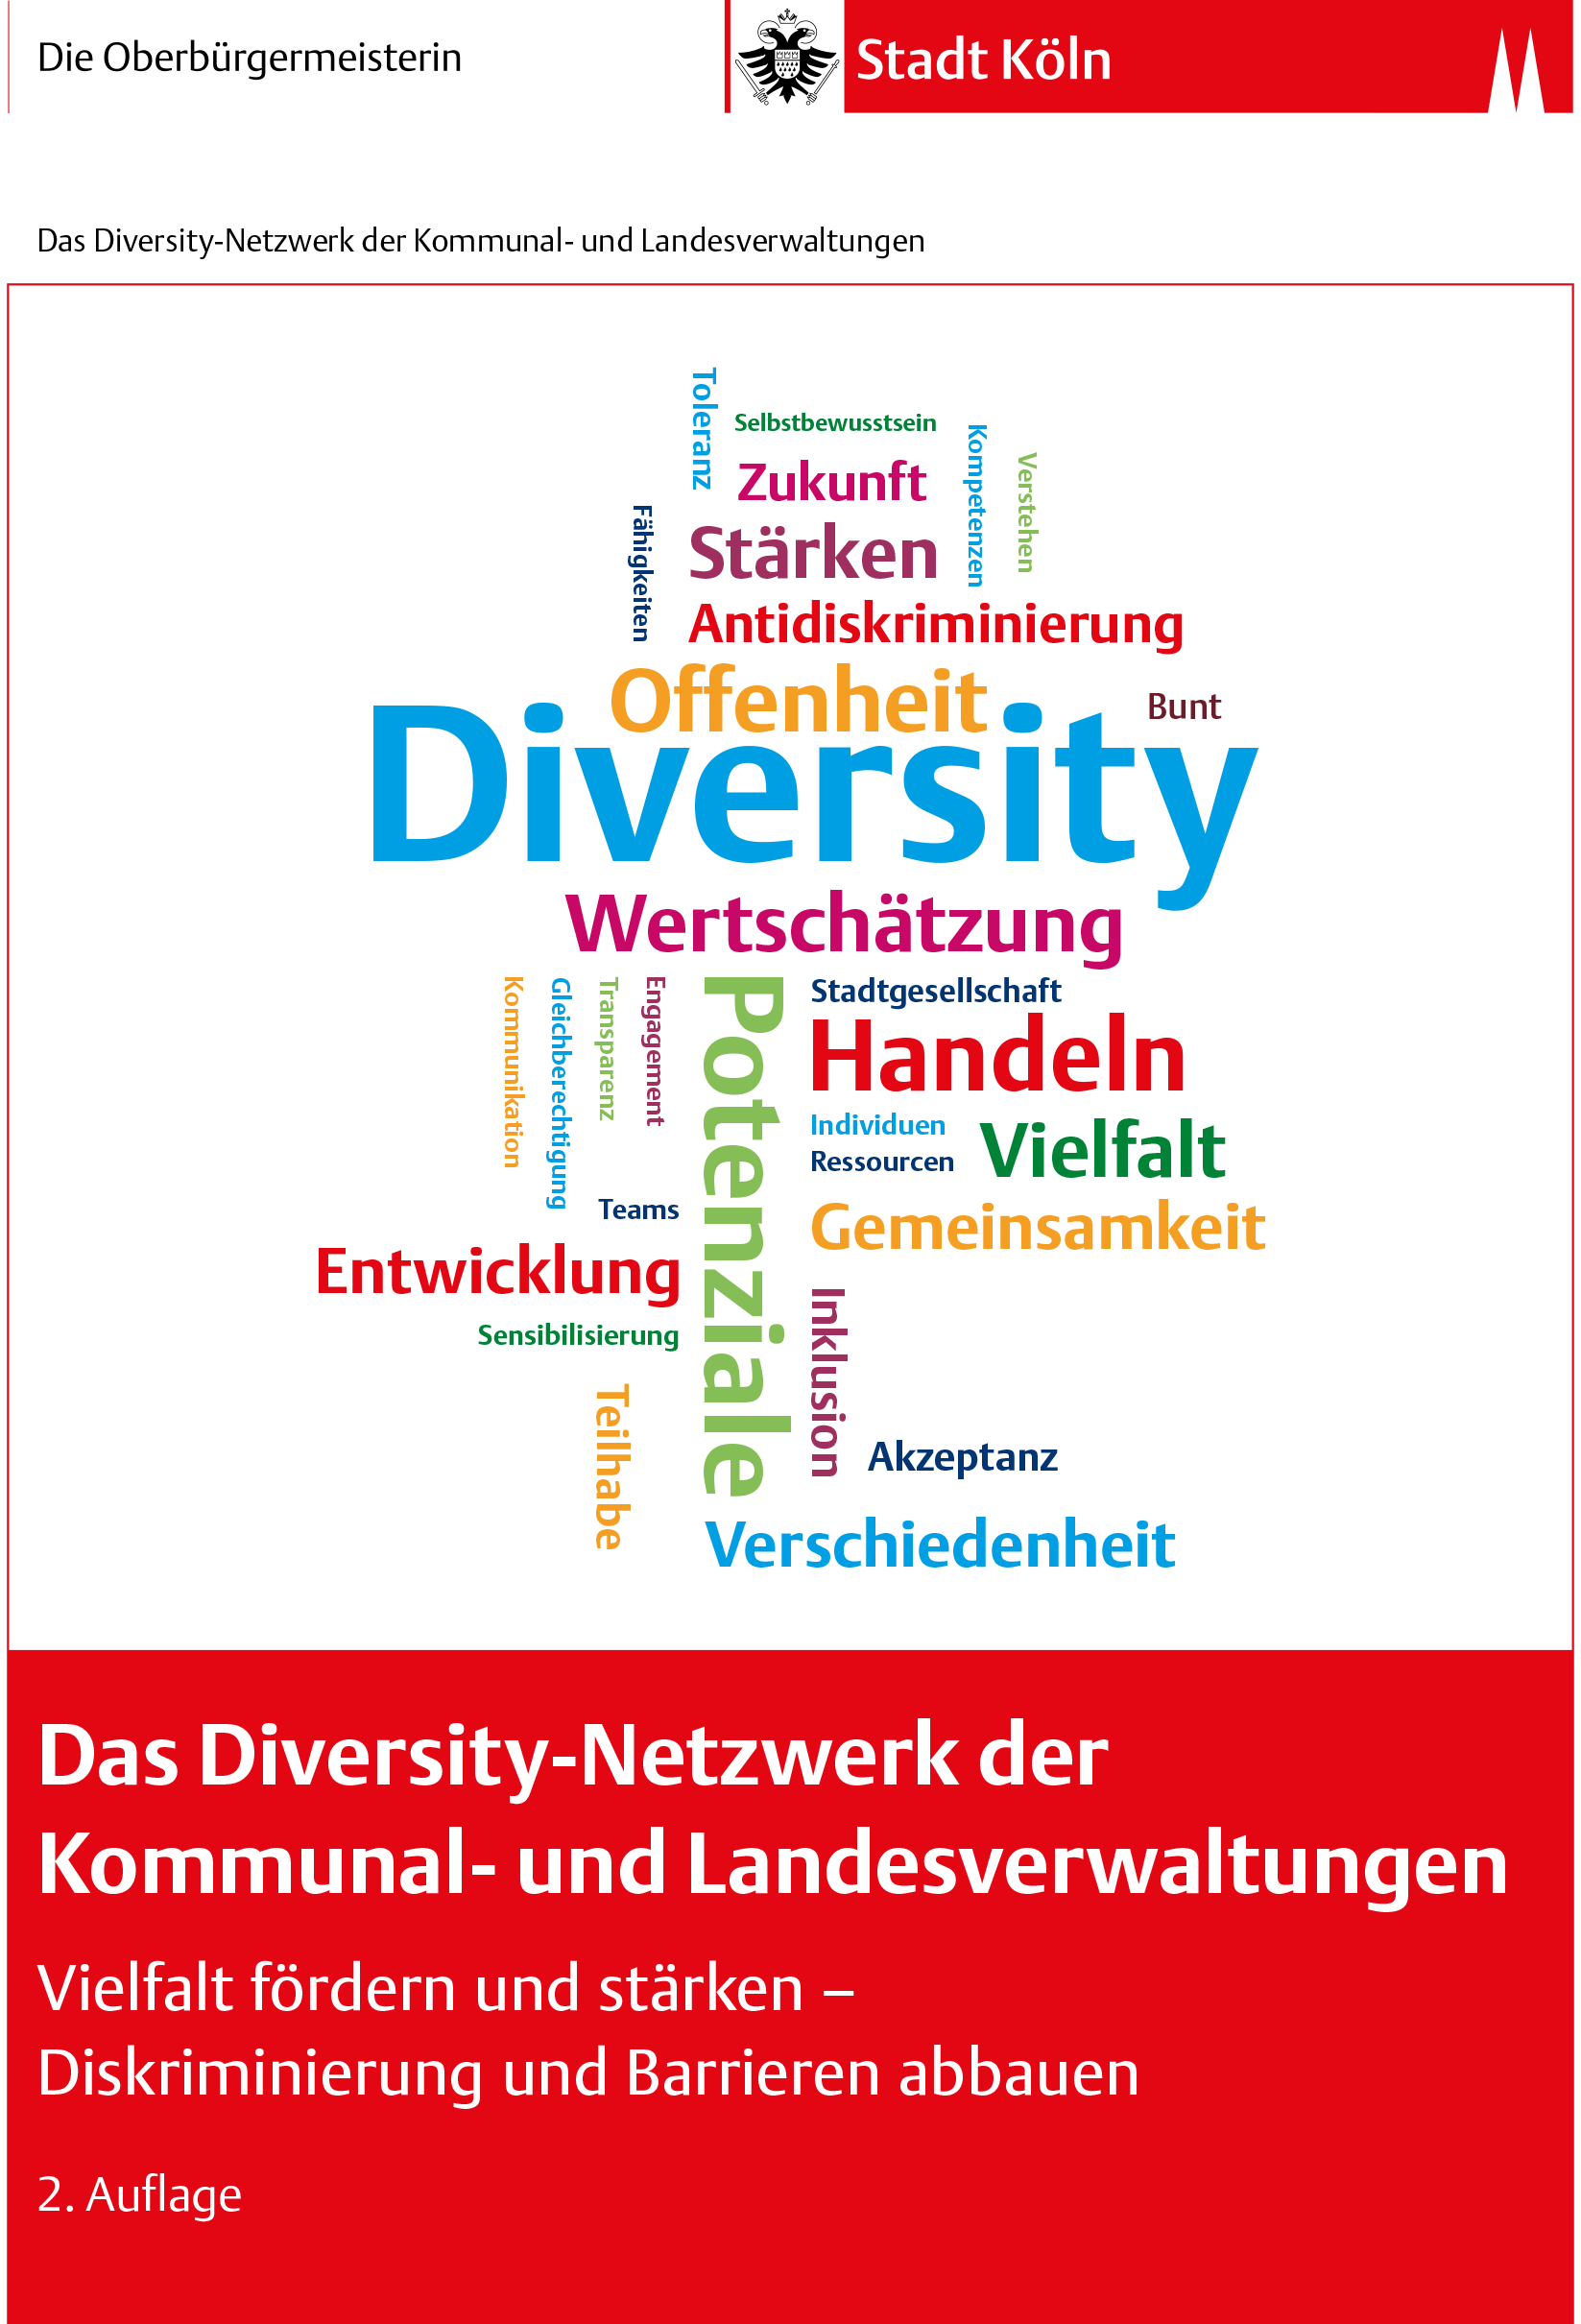 Publikation Diversity-Netzwerk Vielfalt fördern und stärken